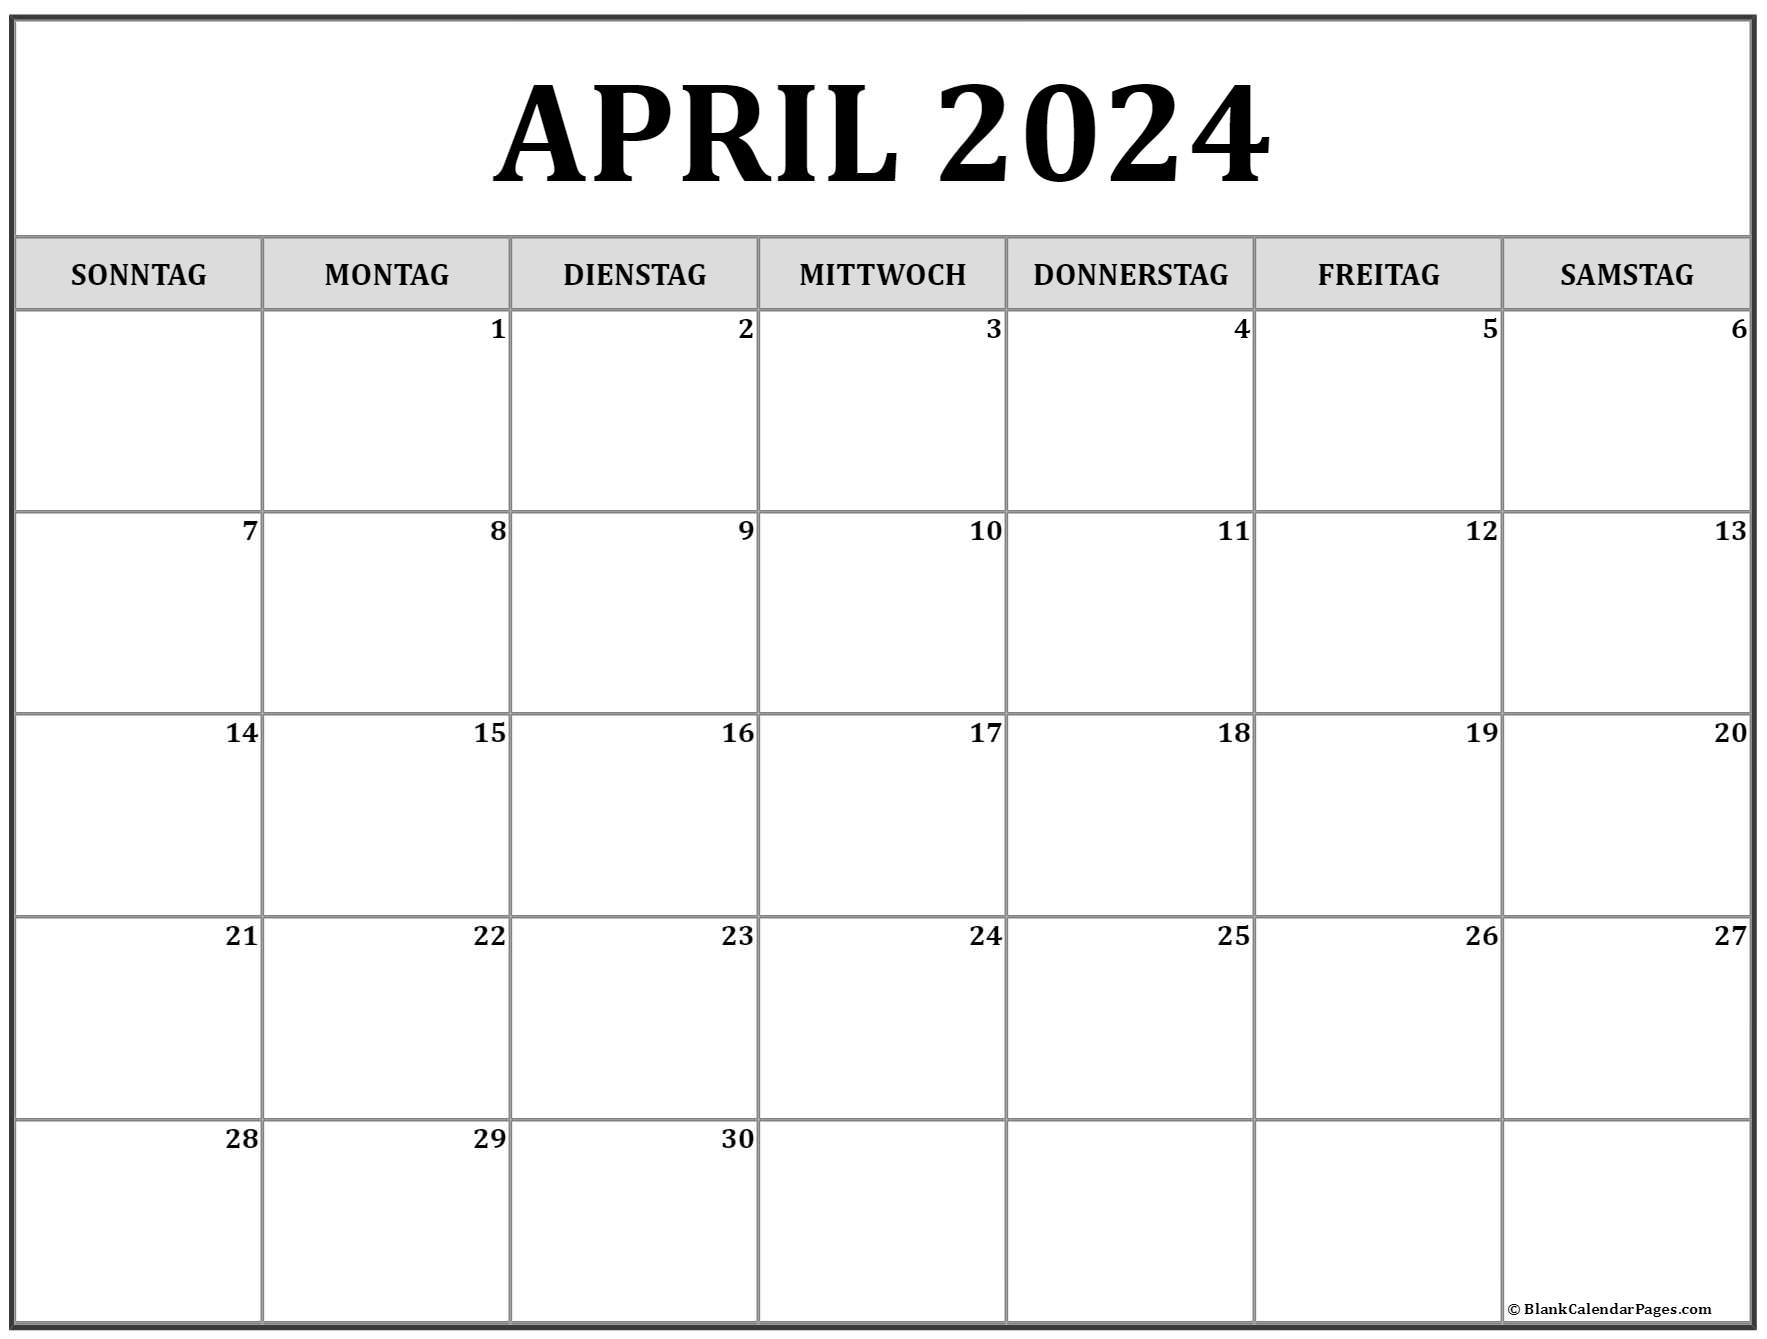 April 2024 kalender auf Deutsch kalender 2024